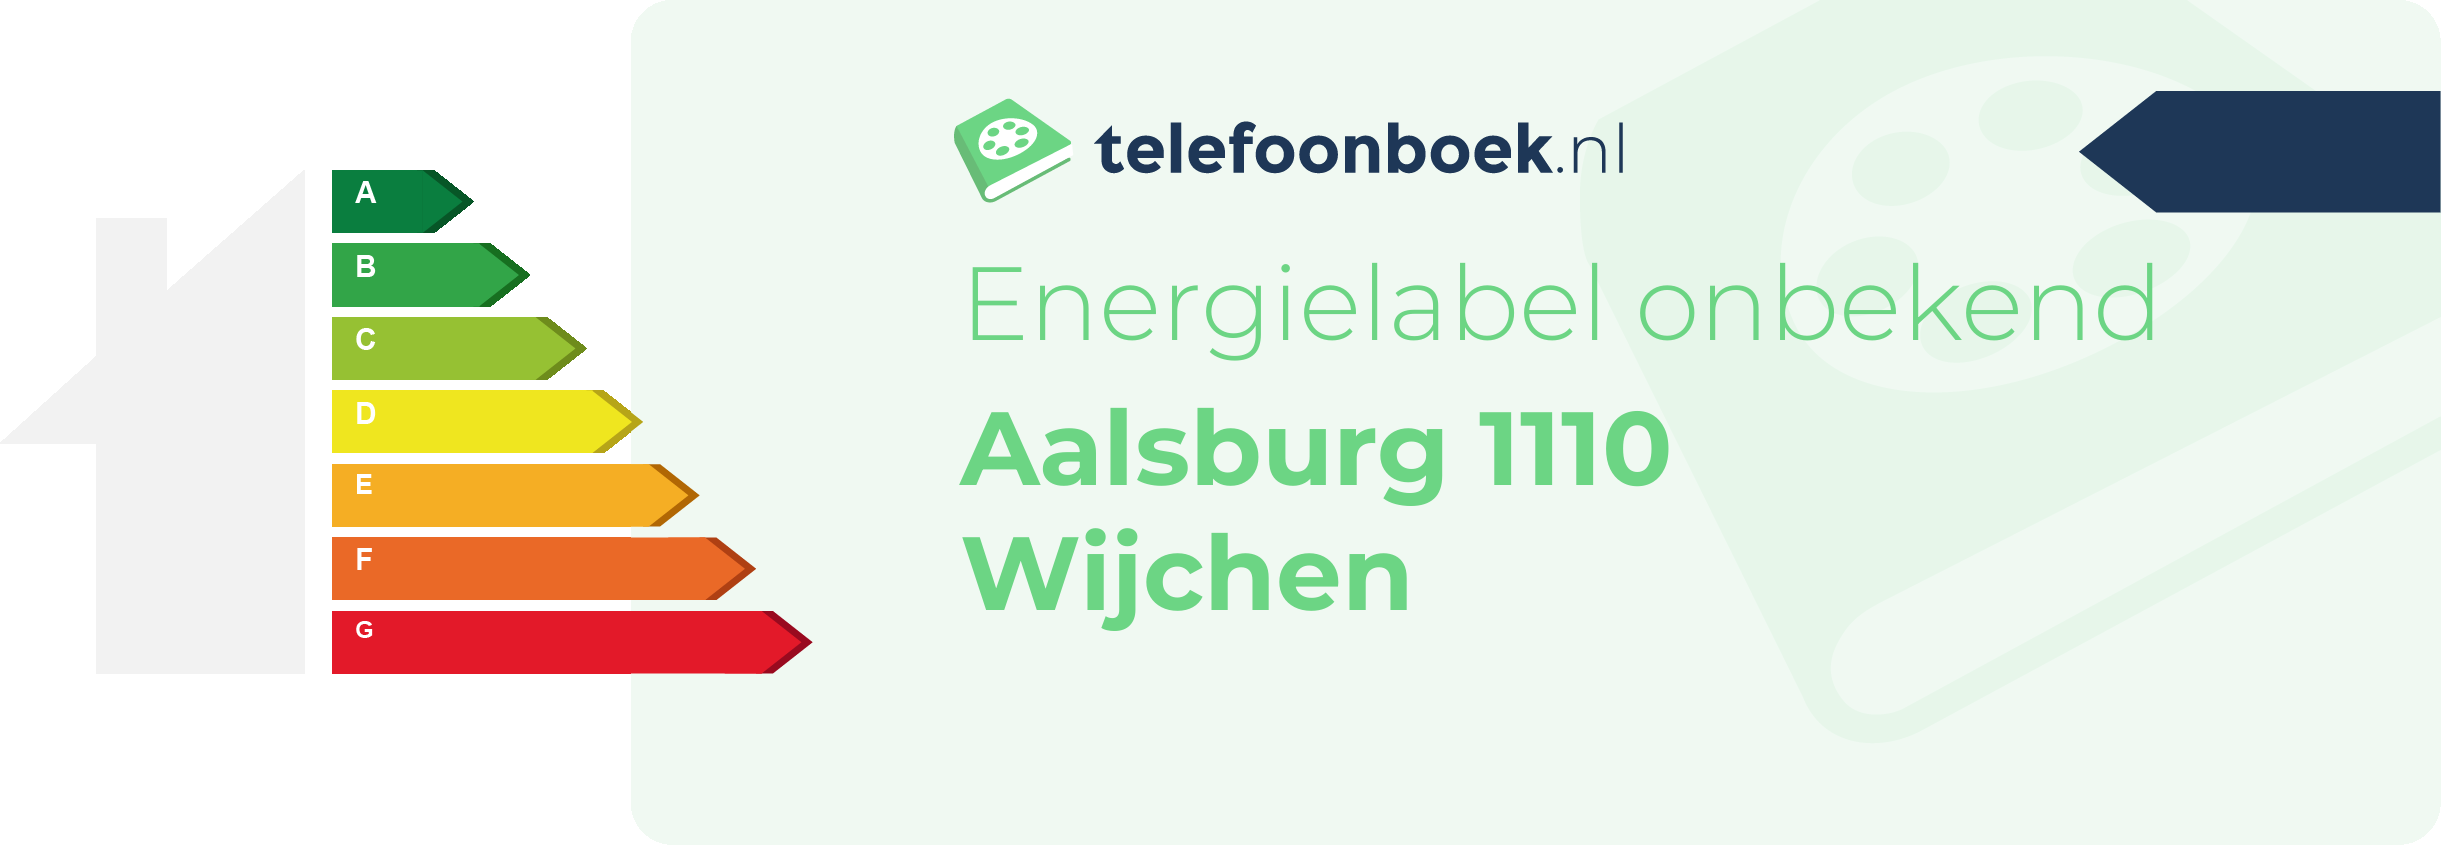 Energielabel Aalsburg 1110 Wijchen